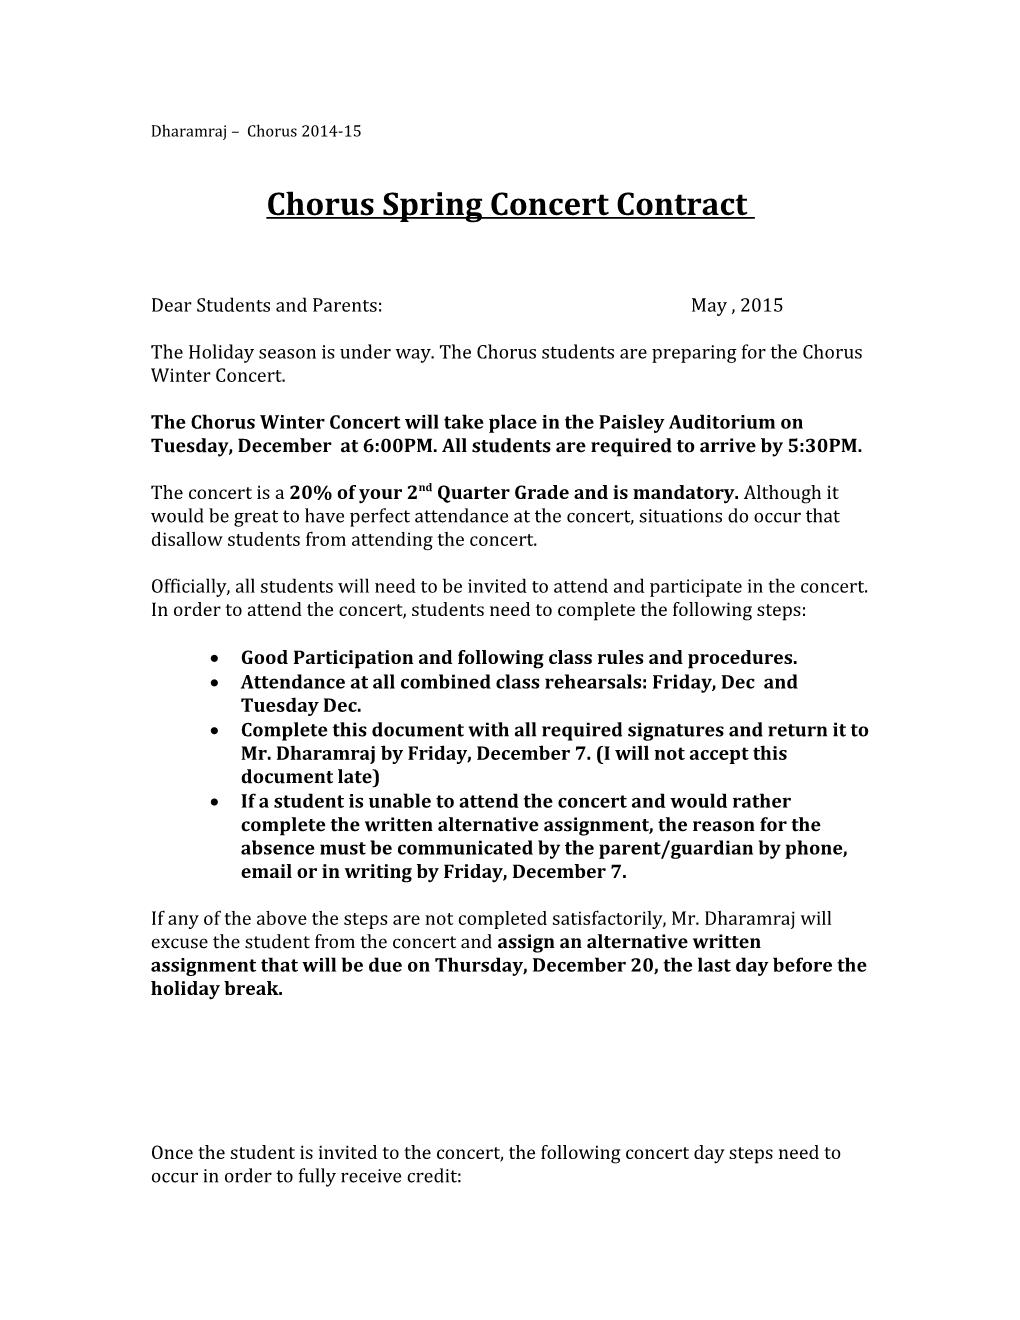 Chorus Spring Concert Contract